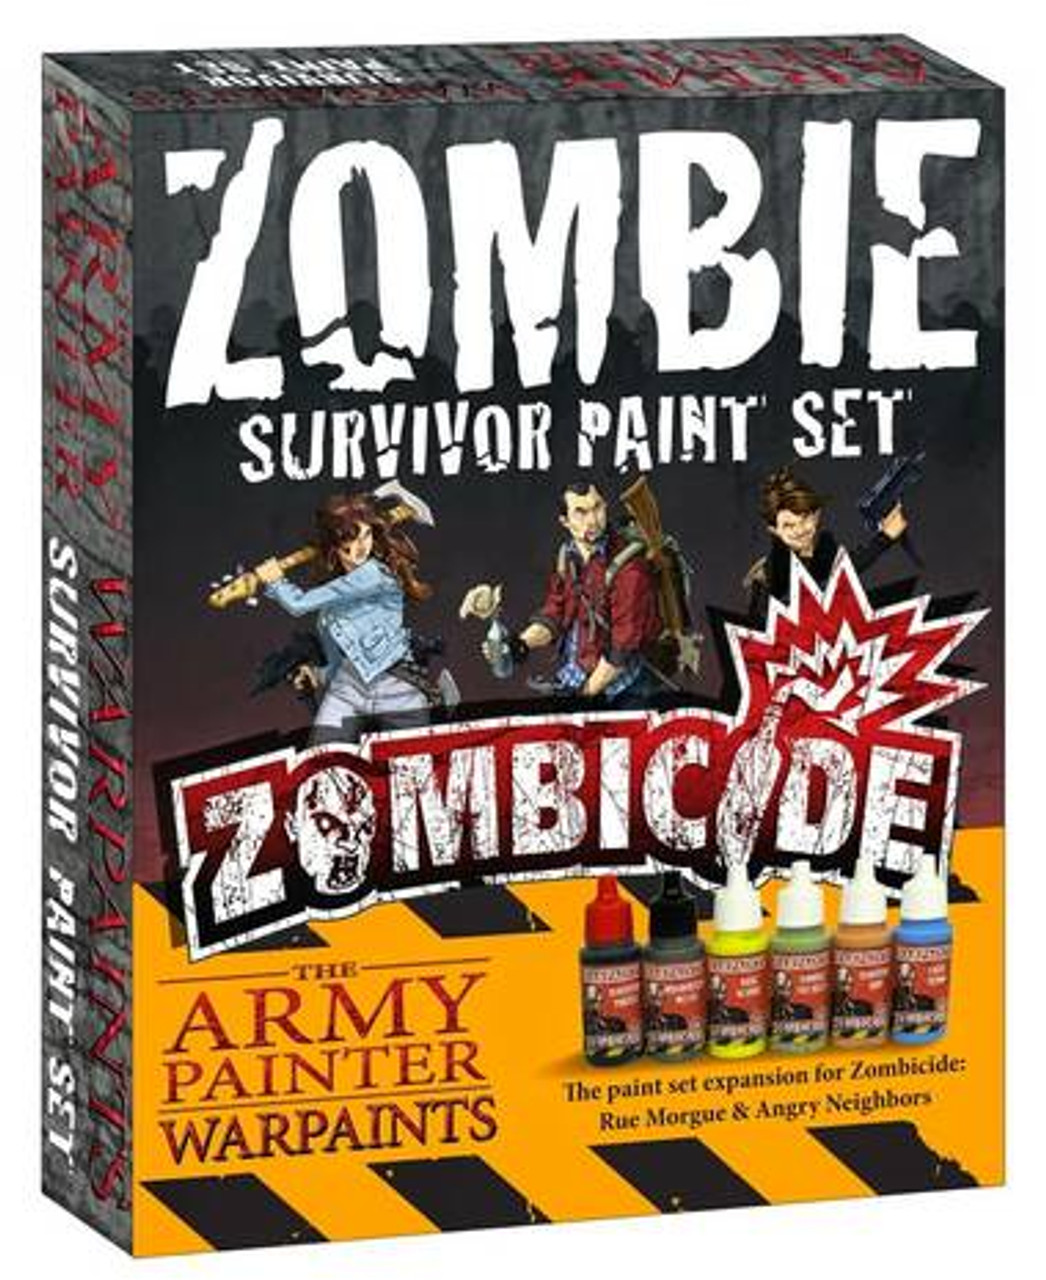 Warpaints: Zombie Survivor paint set